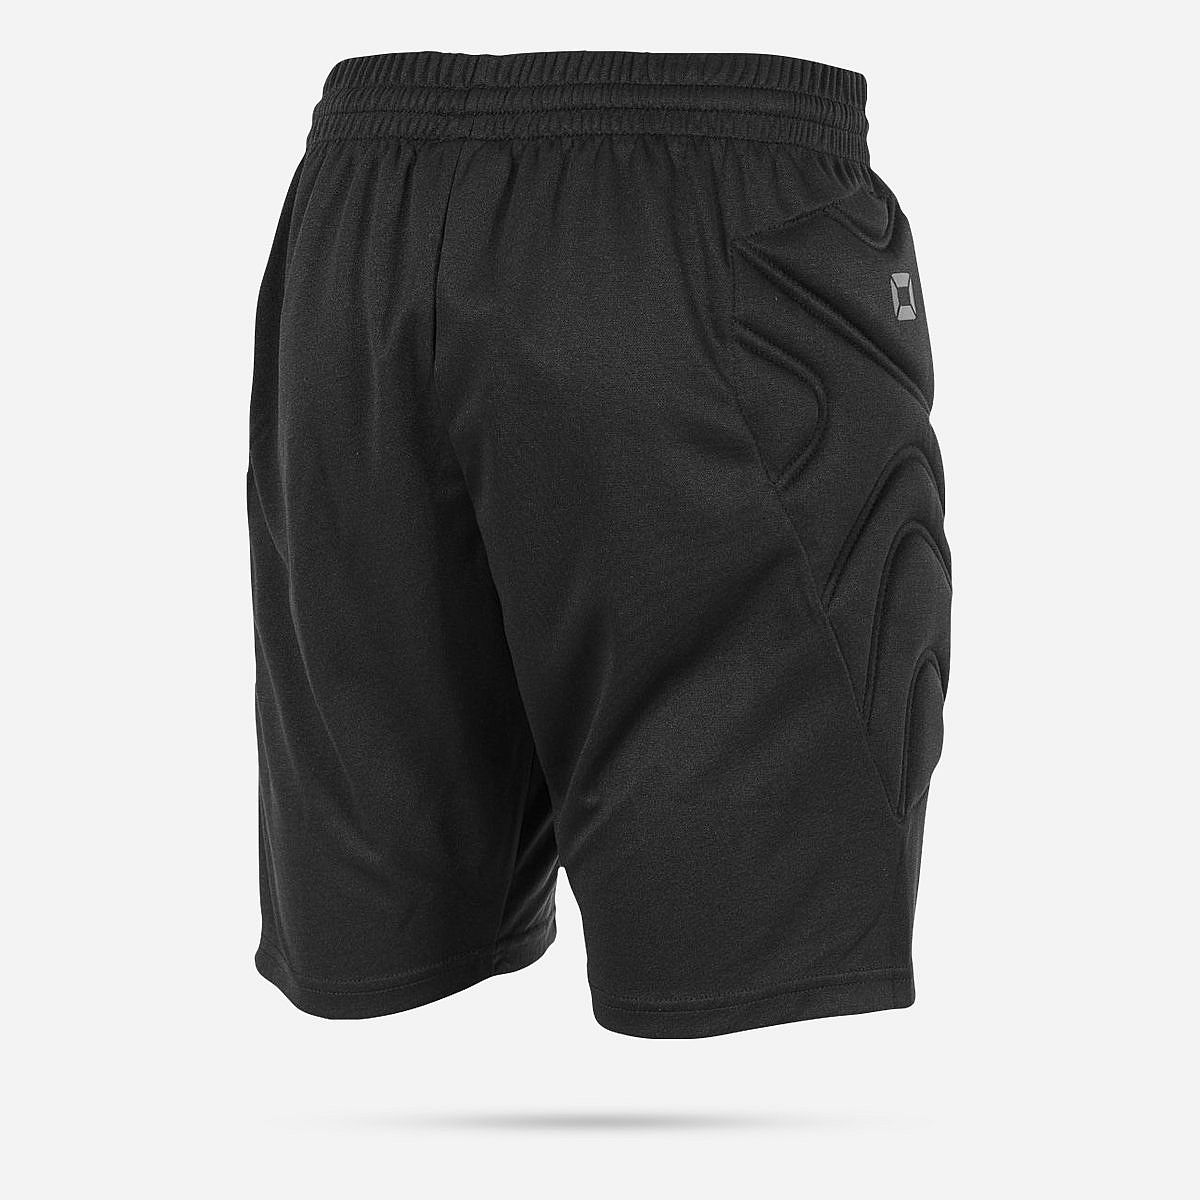 AN303646 Bounce Goalkeeper Shorts